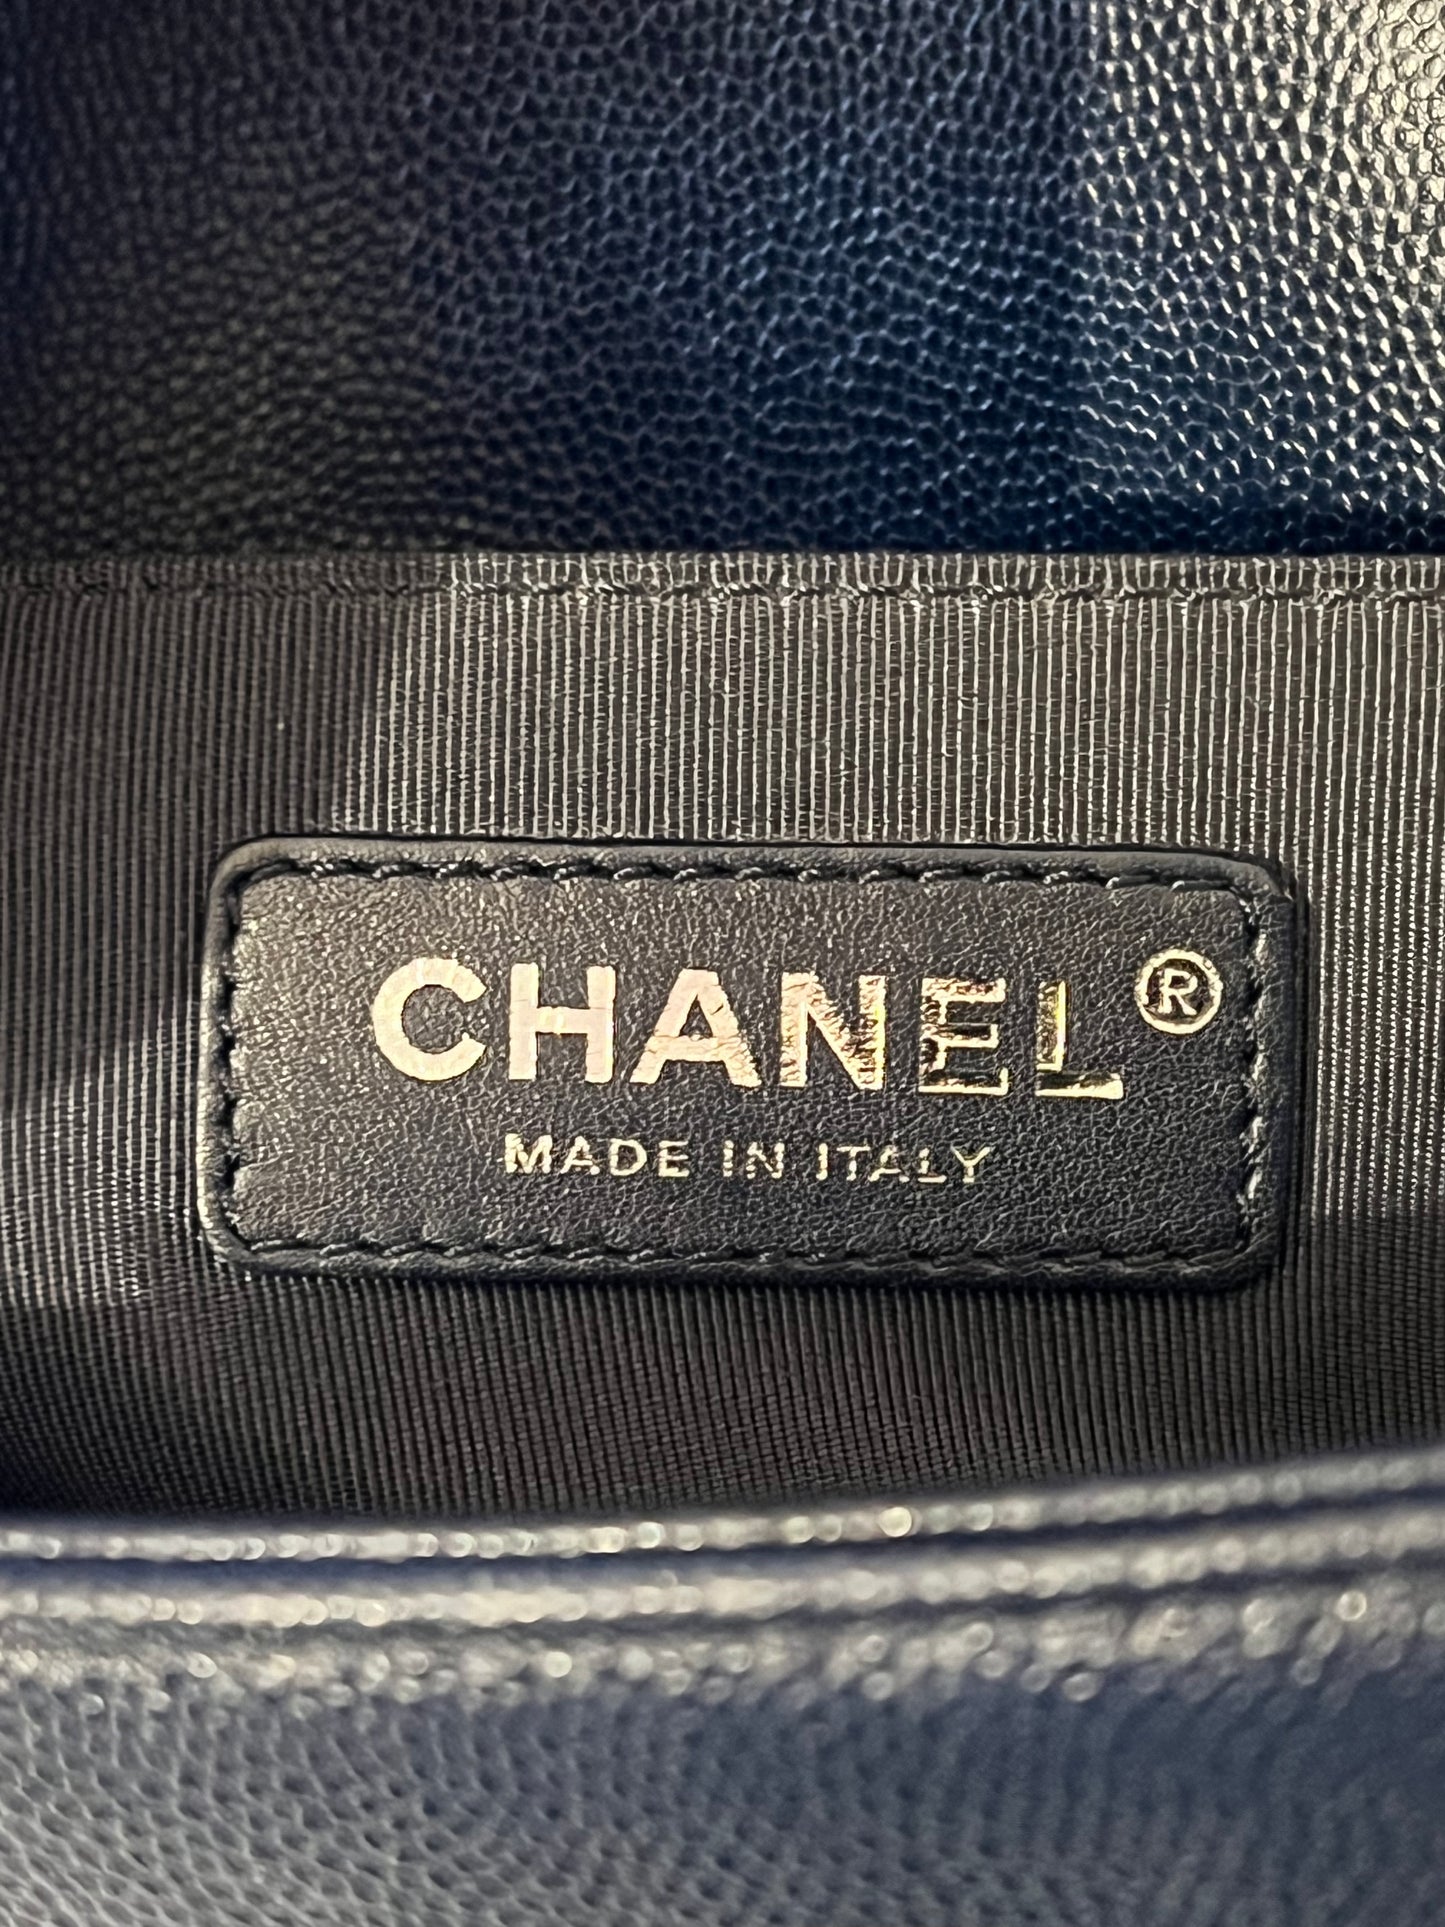 Chanel Boy bag media.